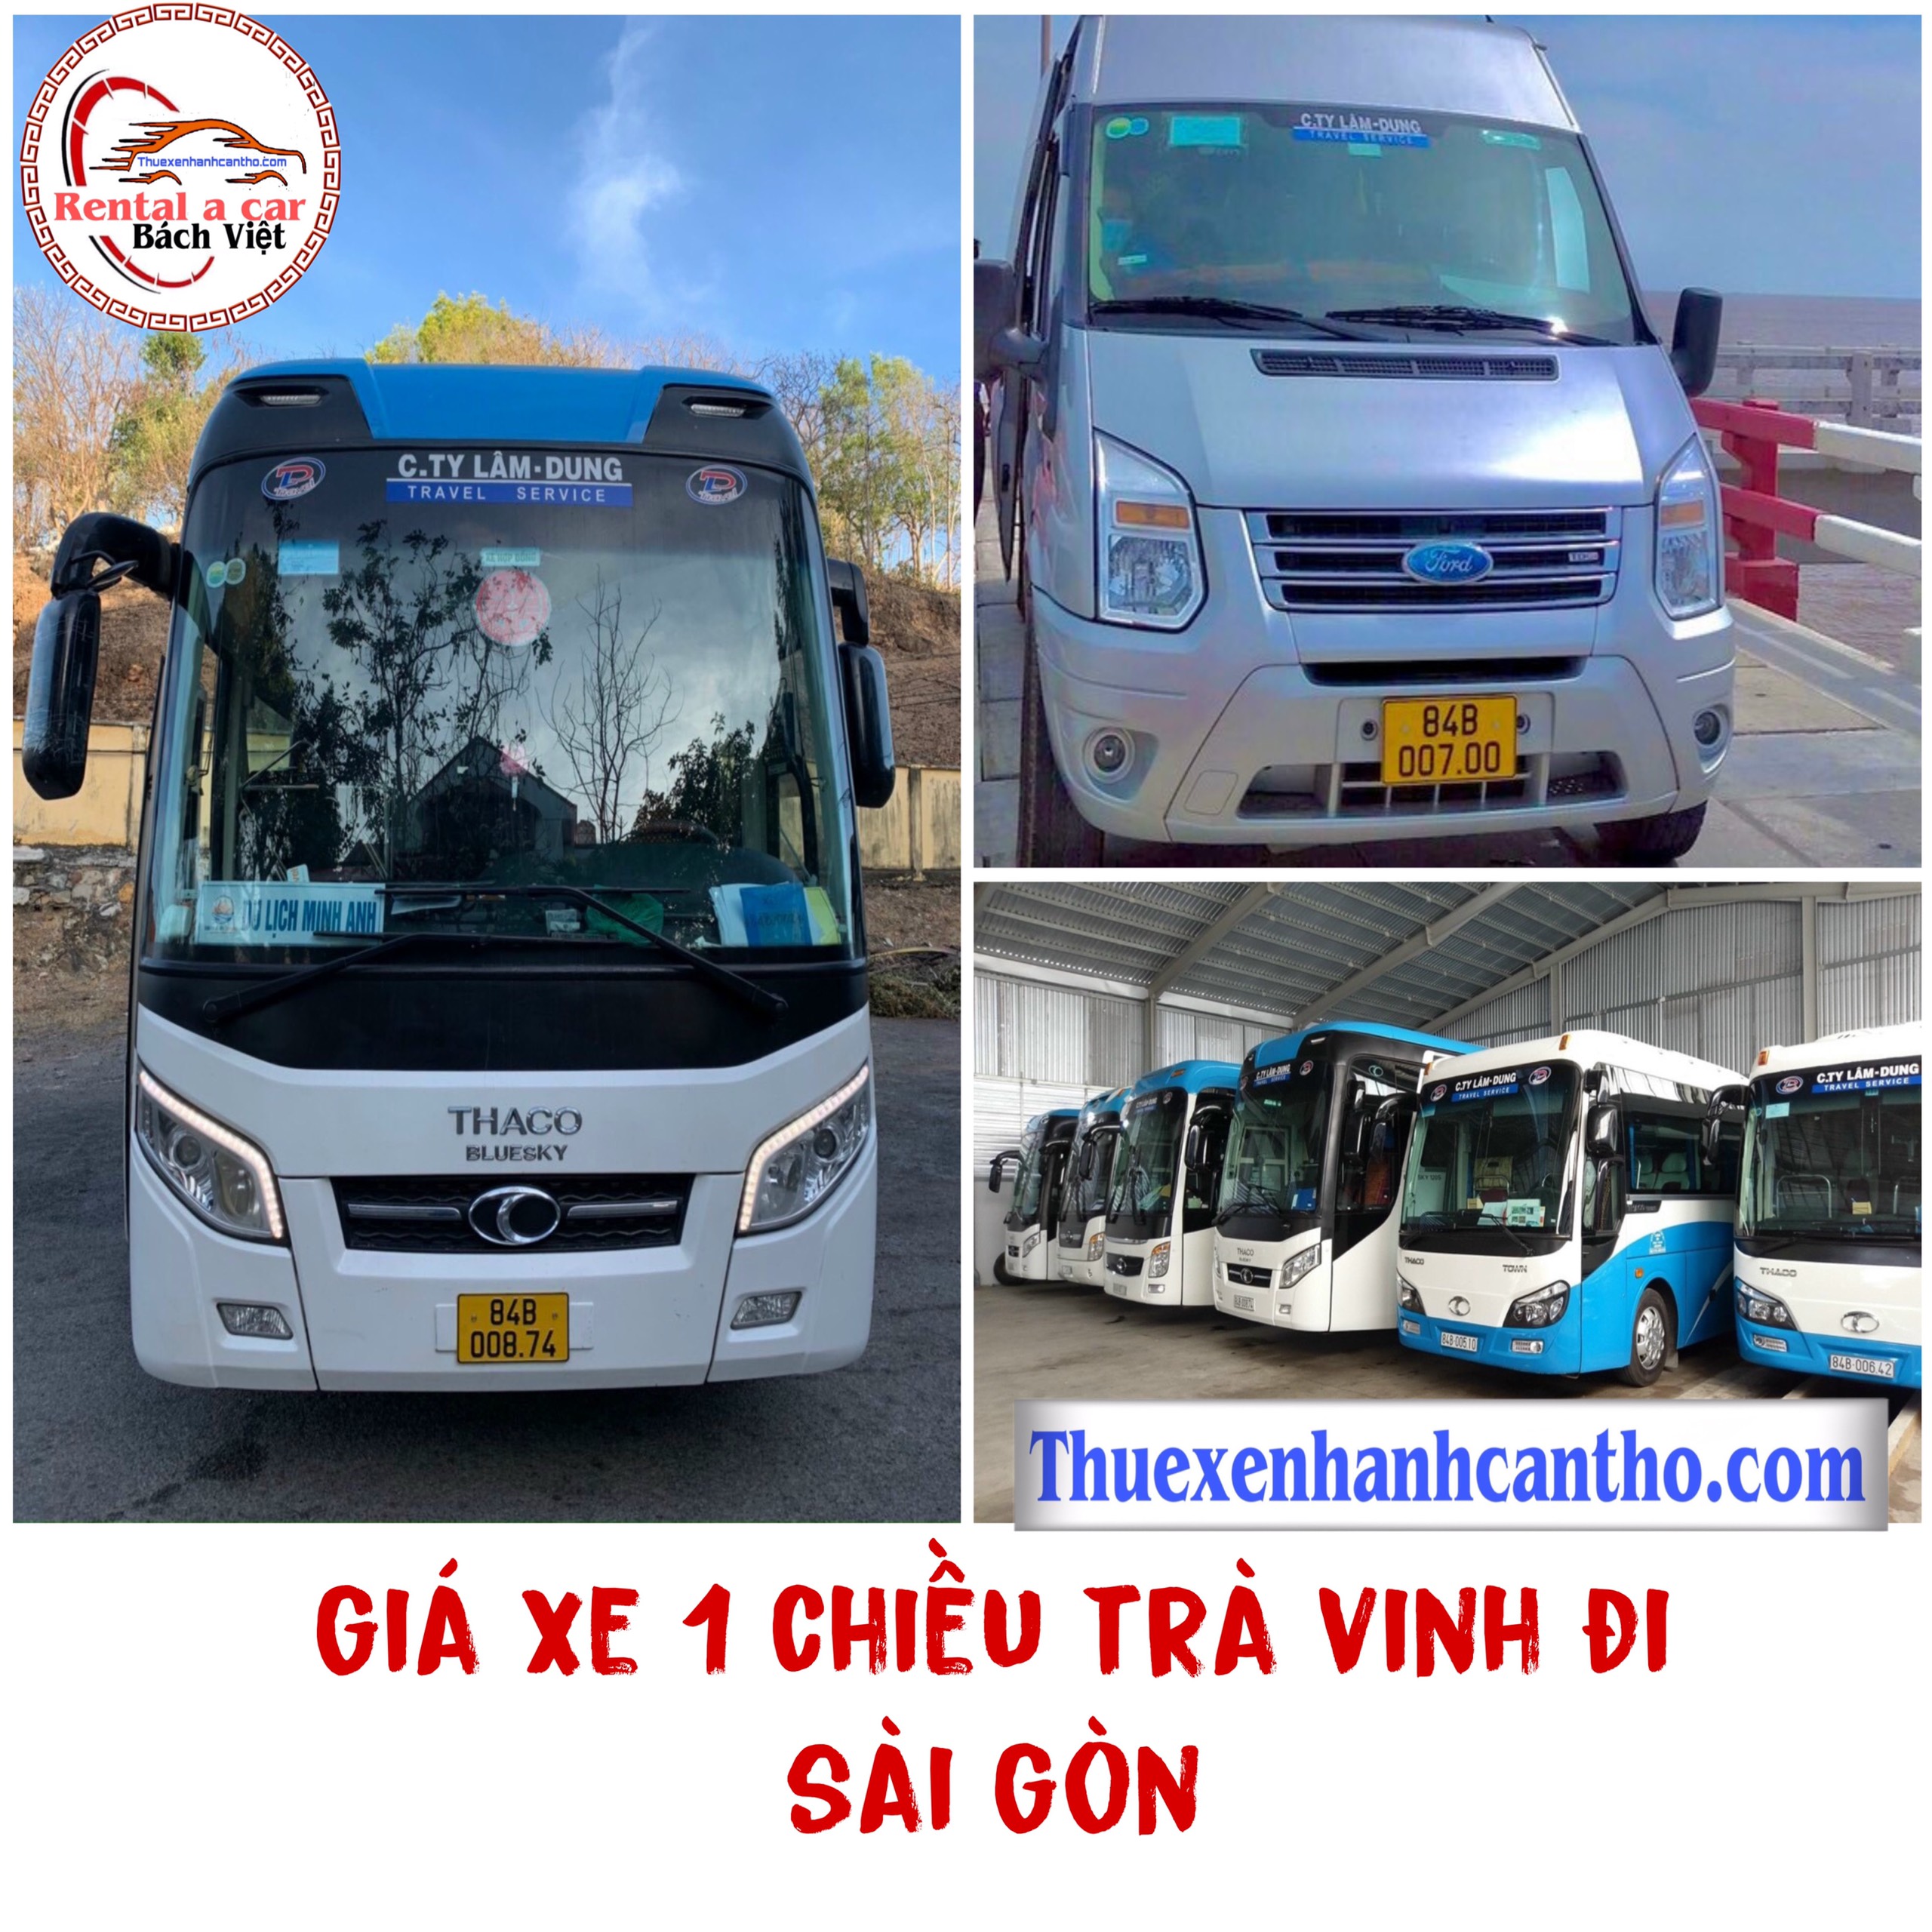 Giá xe 1 chiều từ Trà Vinh đi Sài Gòn giá rẻ